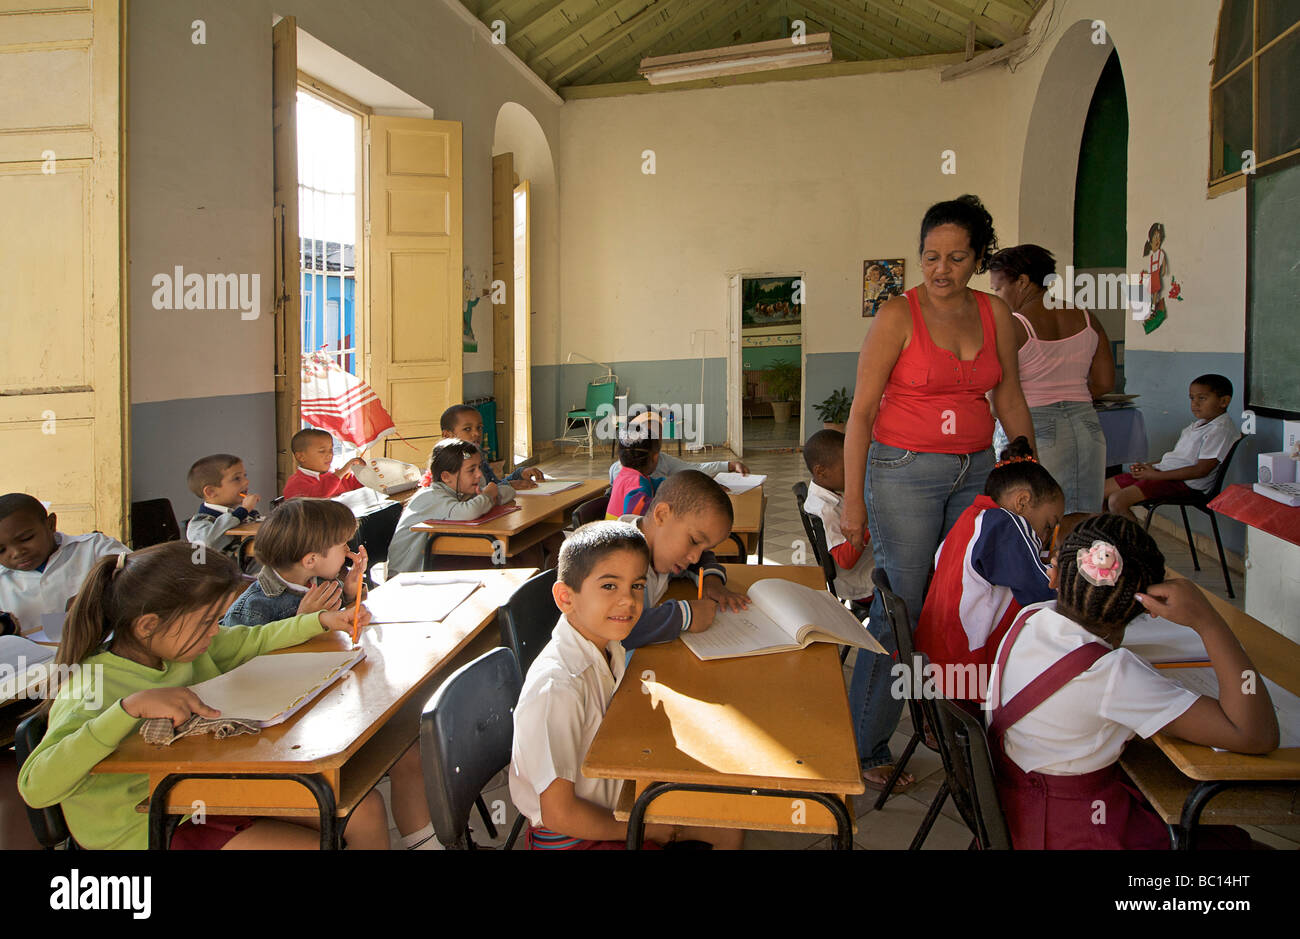 La scuola primaria con bambini alle loro scrivanie. Trinidad, Cuba Foto Stock